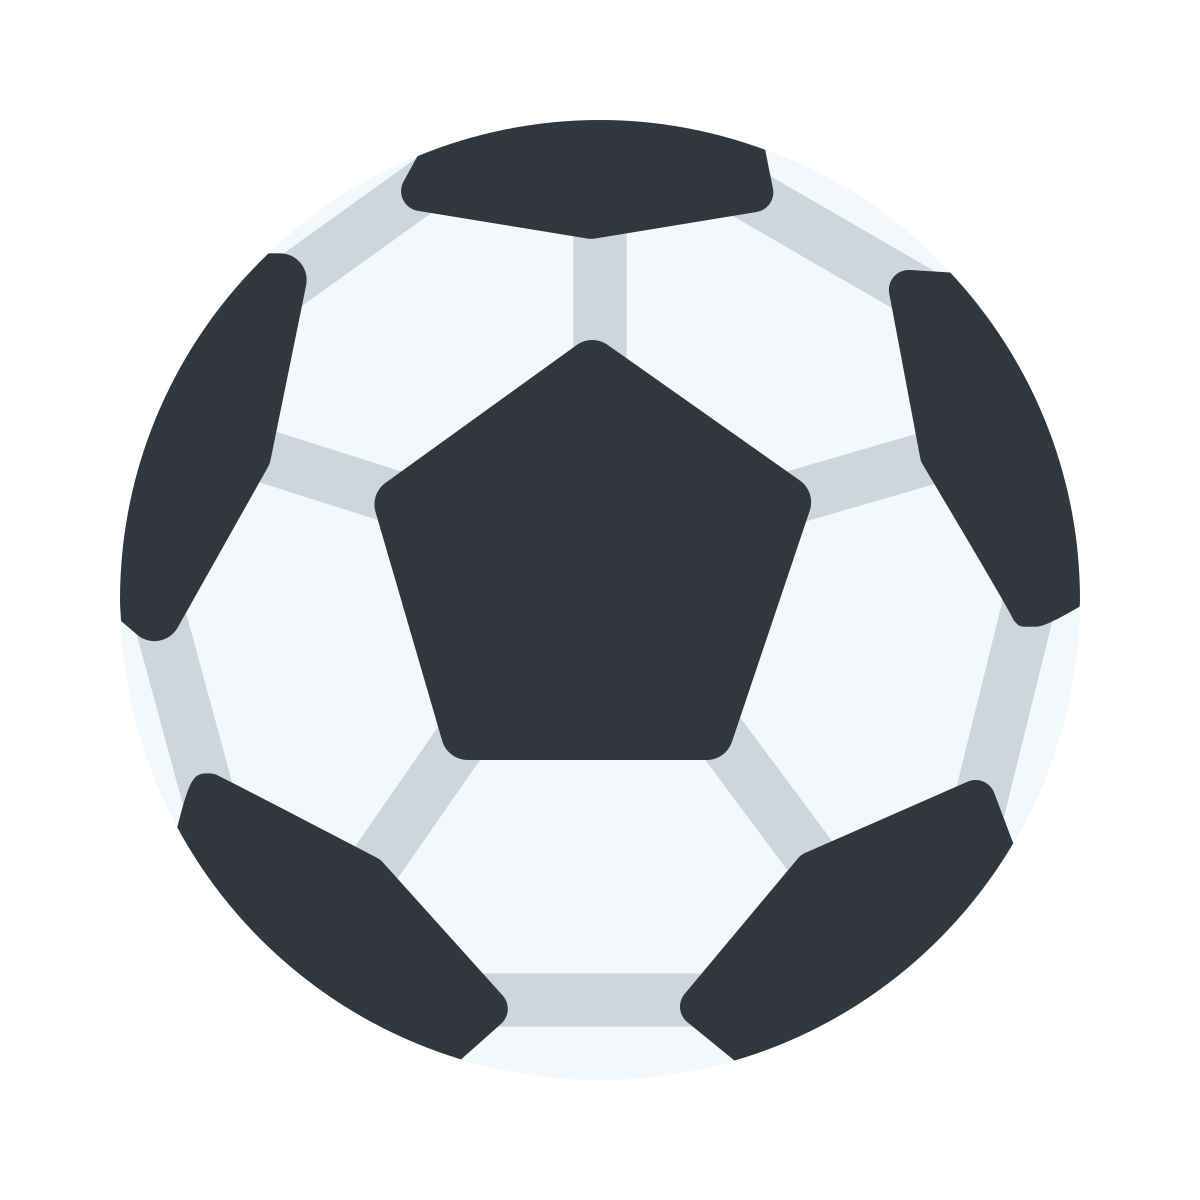 Soccer Ball Emoji PNG Images Transparent Free Download | PNGMart